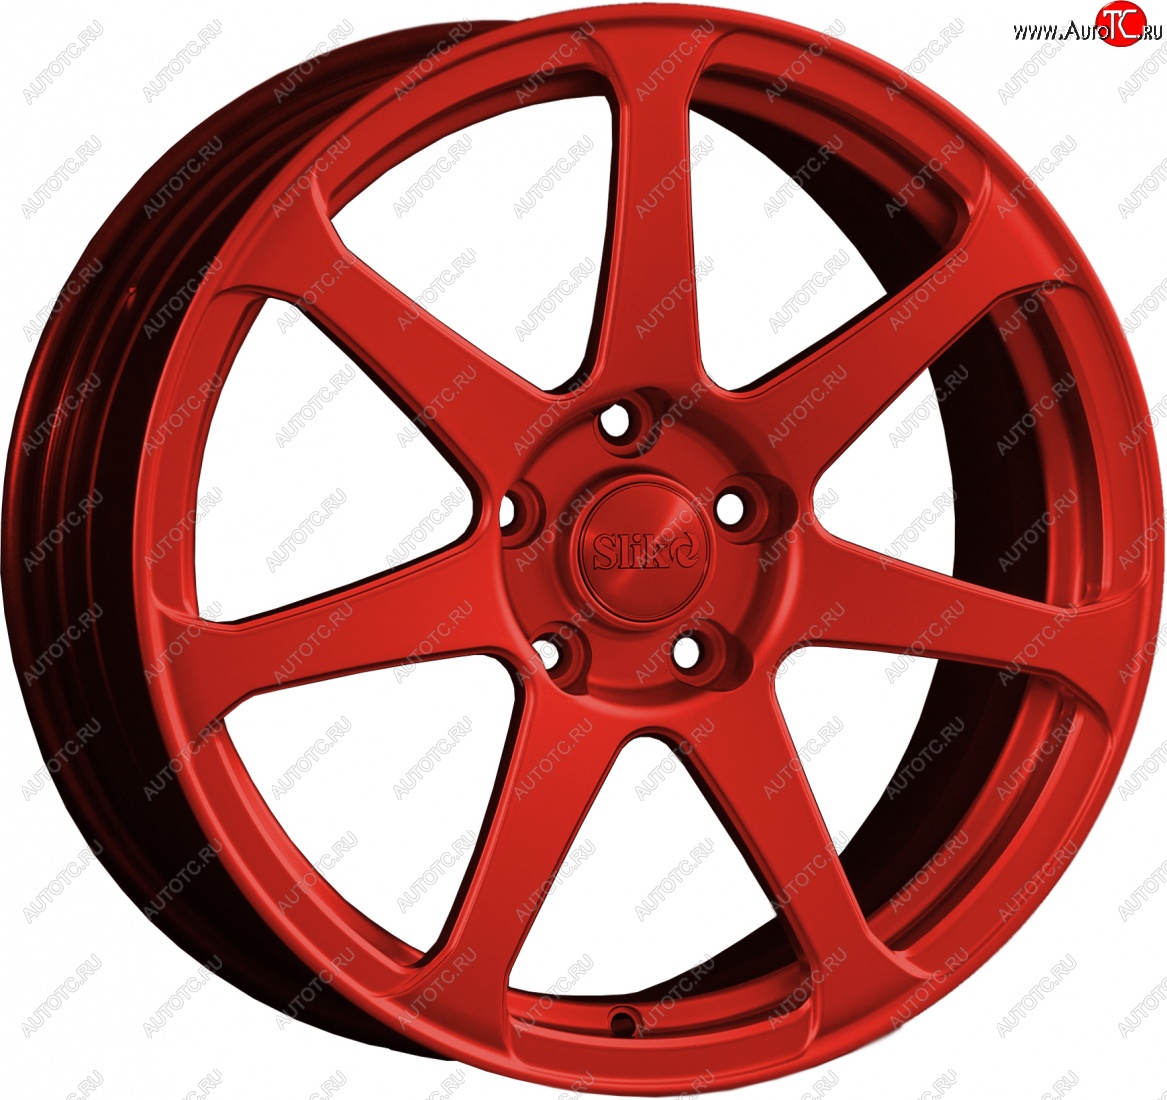 14 499 р. Кованый диск Slik classik R17x7.5 Candy RED красный 7.5x17 Chevrolet Malibu 8 (2013-2015) 5x110.0xDIA65.1xET40.0 (Цвет: Candy RED красный 7.5x17)